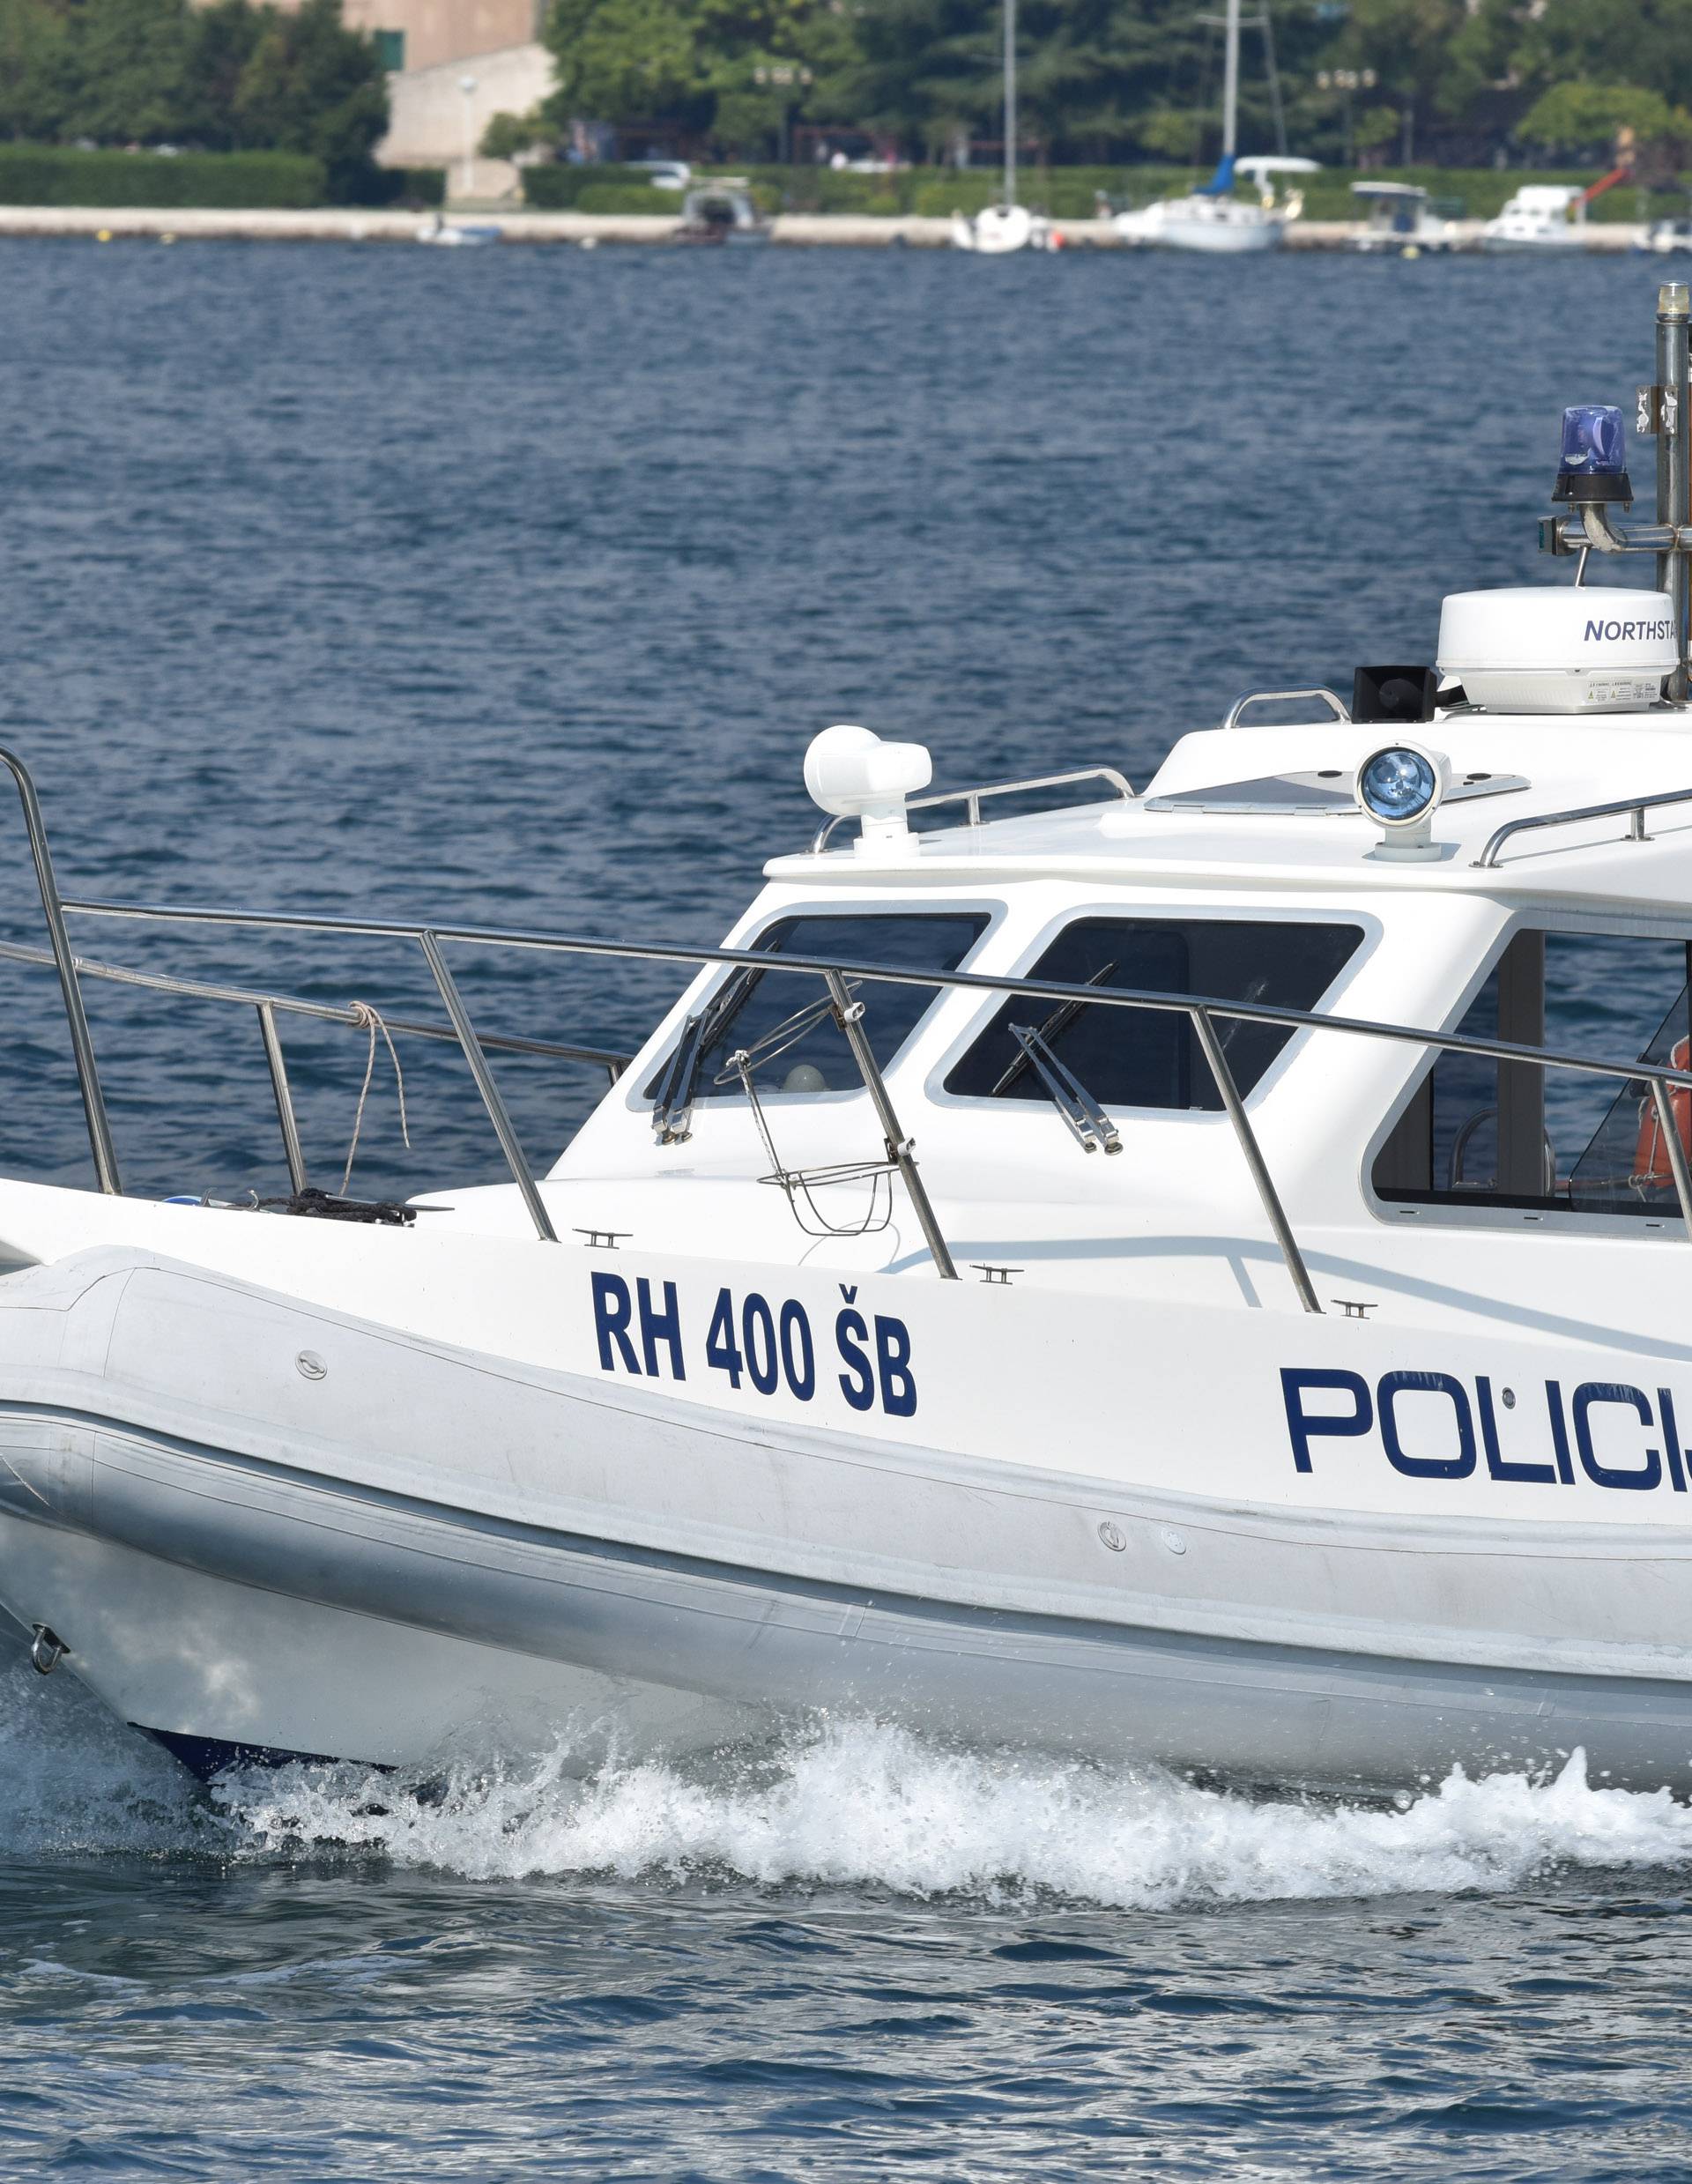 Ribarili kod Palagruže: Policija uhitila trojicu talijanskih ribara